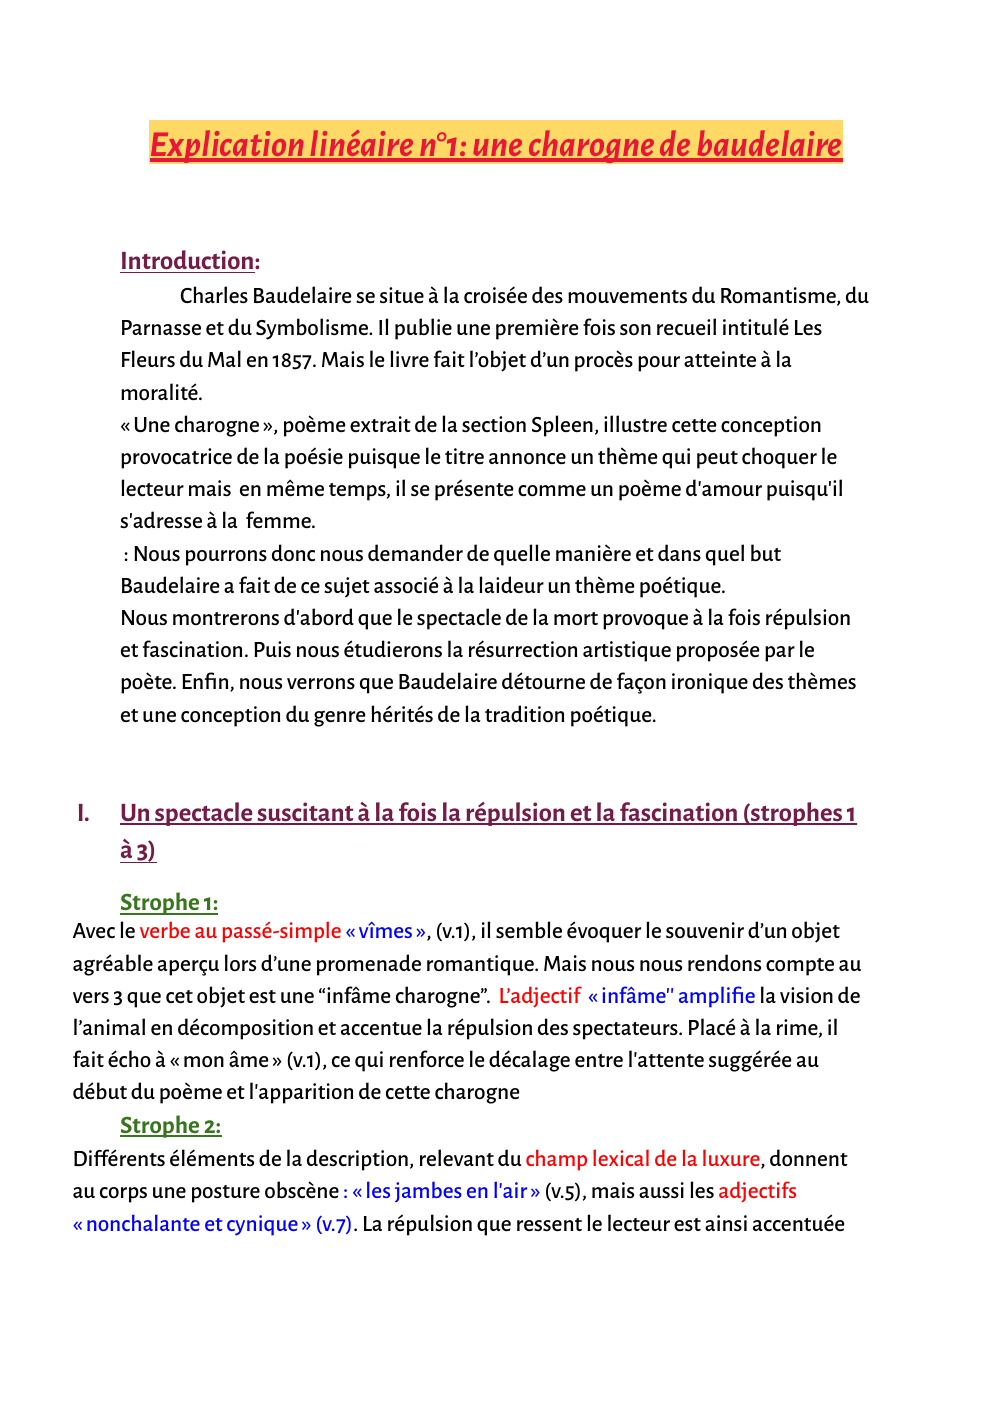 Prévisualisation du document explication linéaire charogne baudelaire